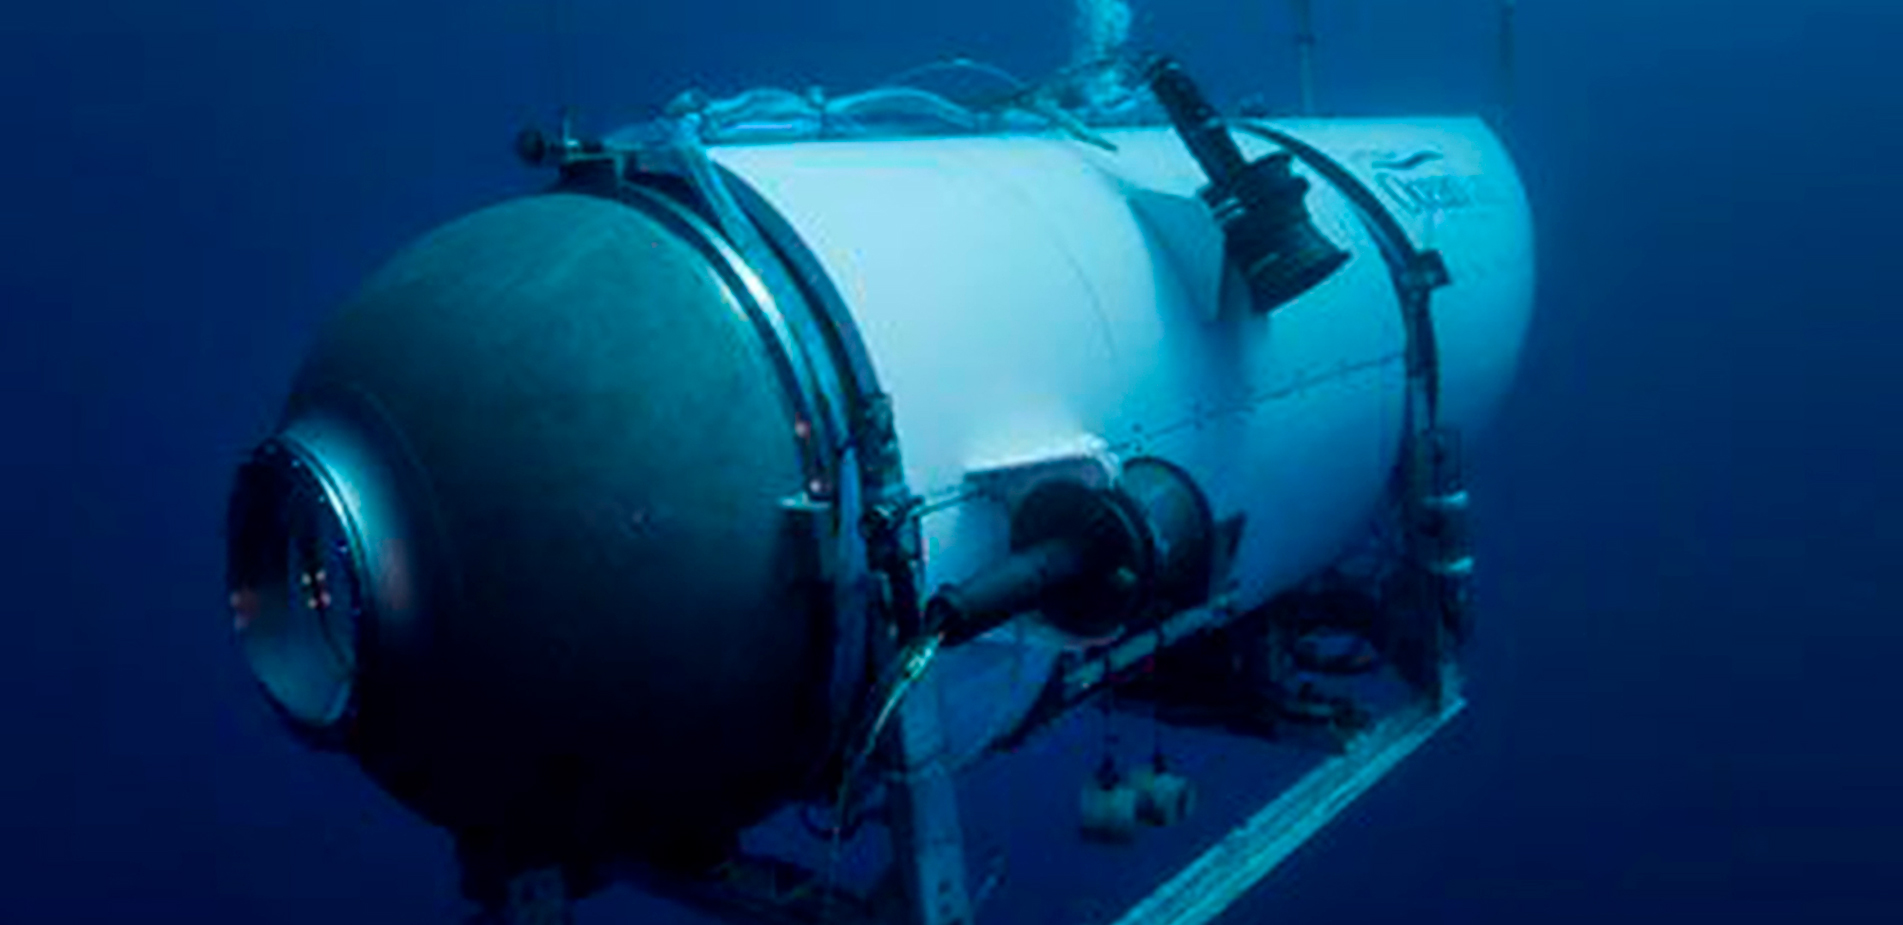 Τα σενάρια για την εξαφάνιση του υποβρύχιου στον Τιτανικό – Τι μπορεί να συνέβη και πόσο χρόνο έχουν οι επιβάτες